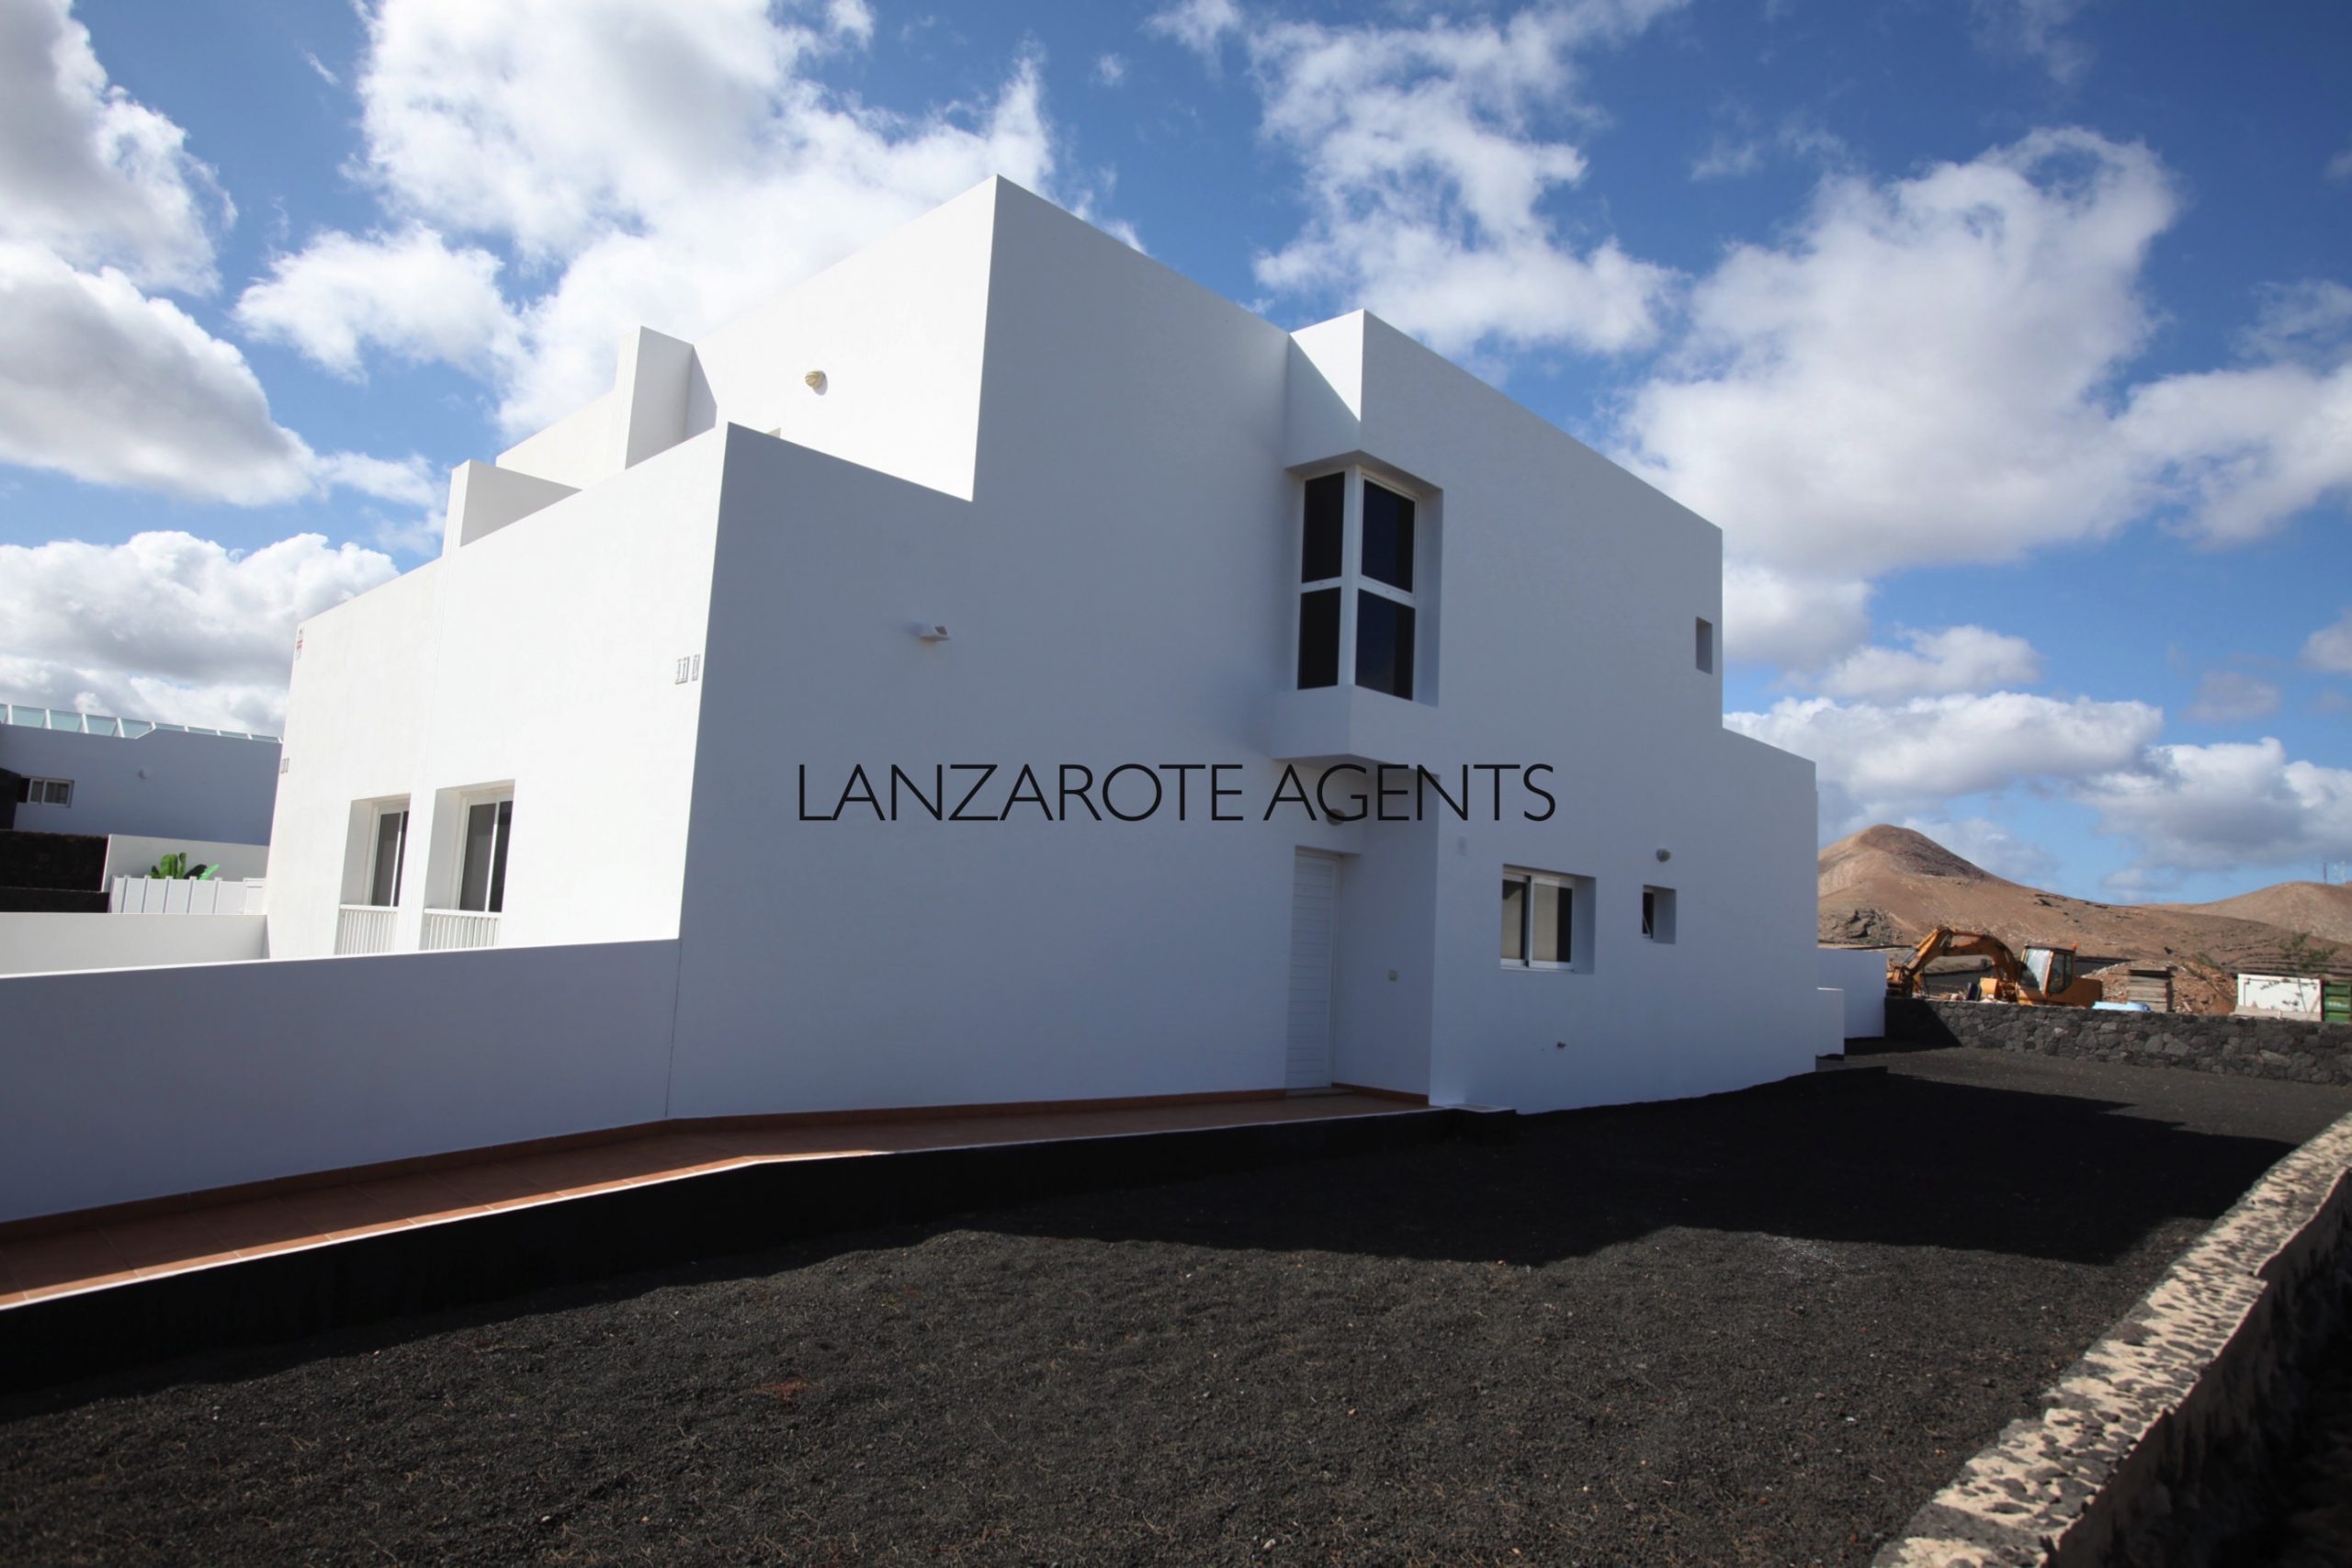 Duplex Villa in La Vegueta a quiet Village in the Centre of Lanzarote